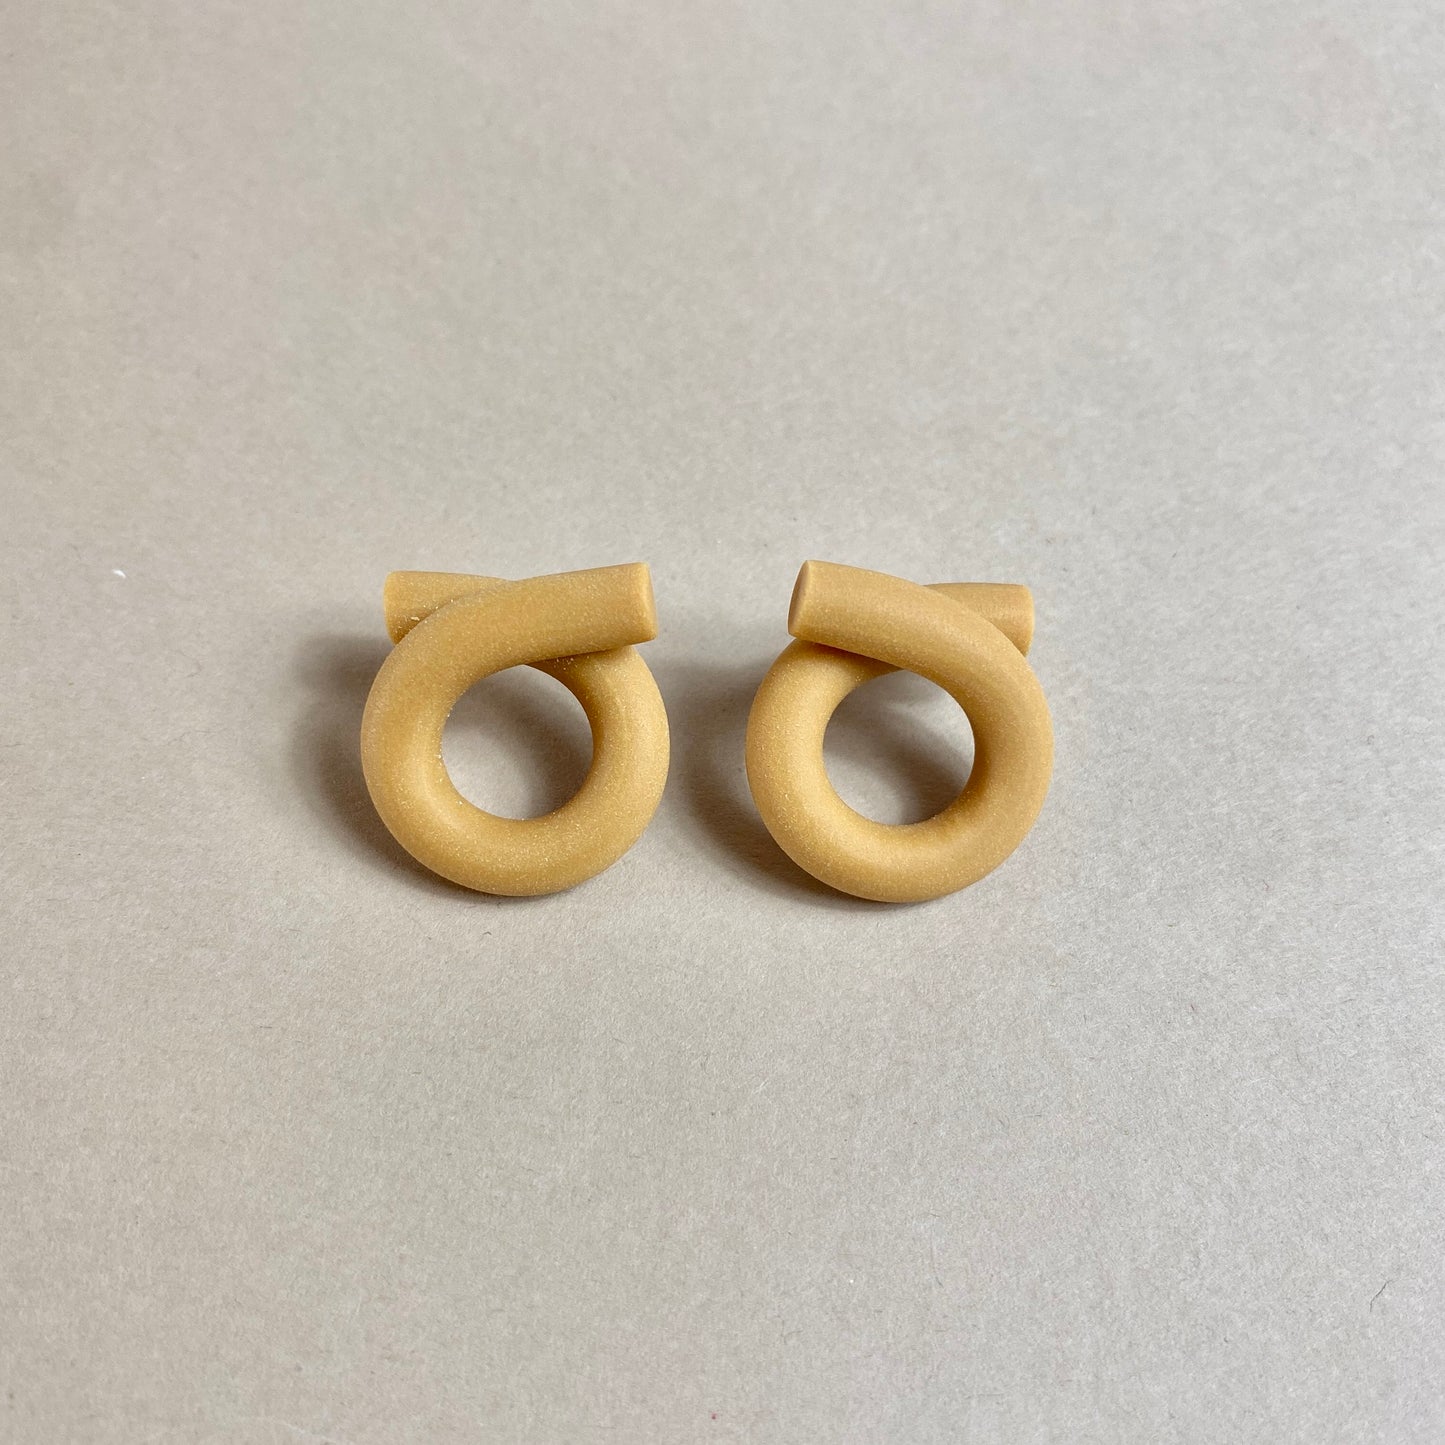 Loop earrings